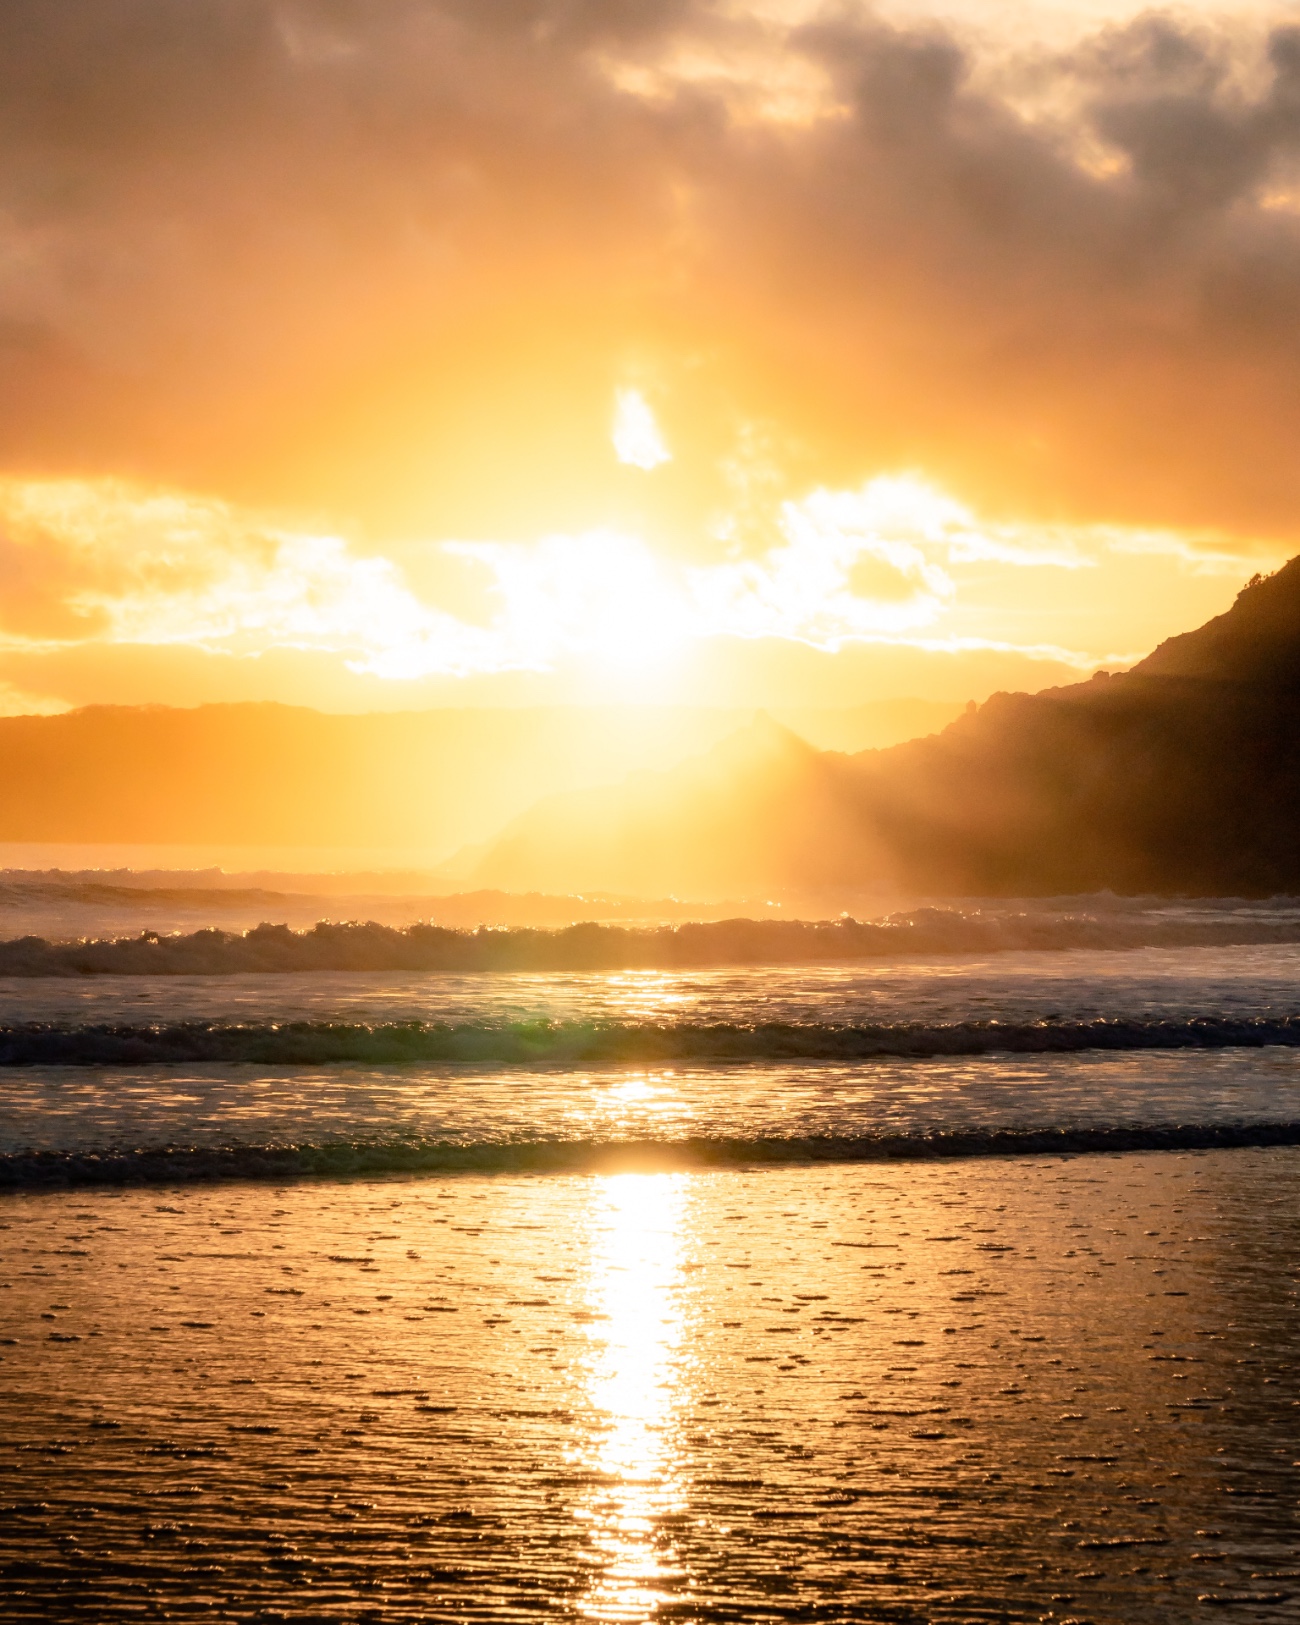 صورة للشاطئ عند غروب الشمس مع موجات لطيفة تستحم جميعها في وهج ذهبي.